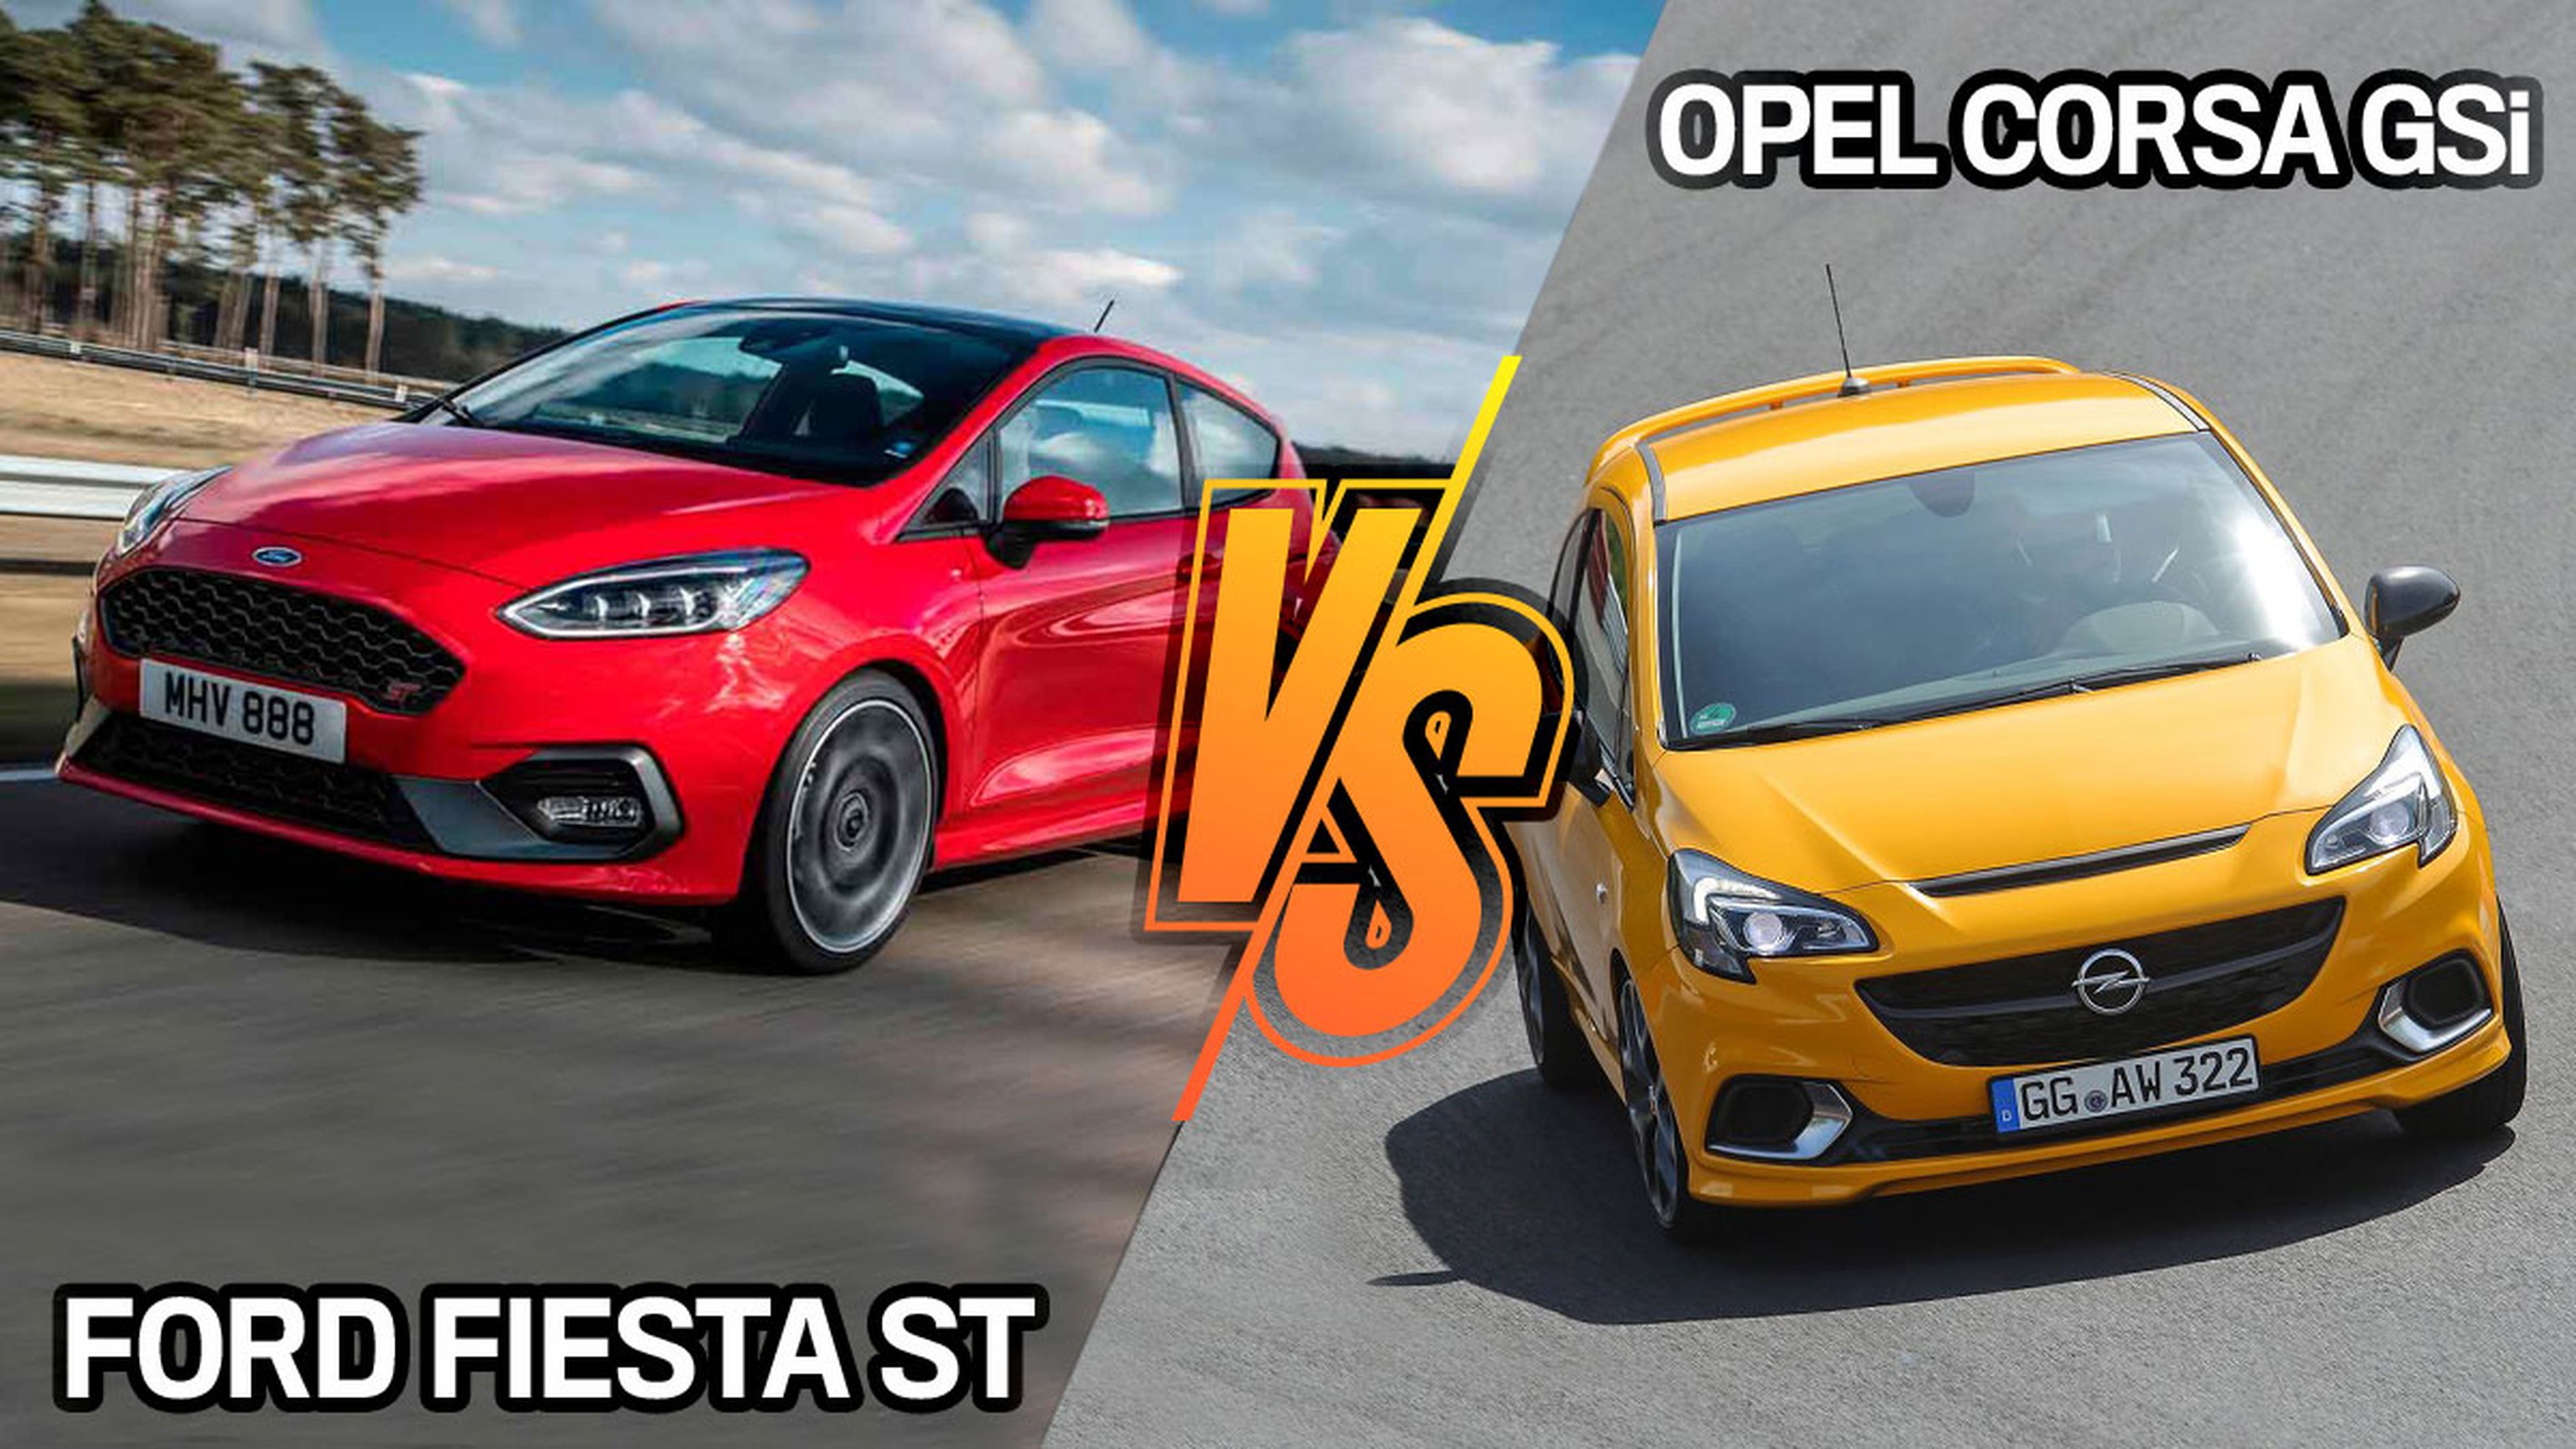 Ford Fiesta ST vs Opel Cosa GSi